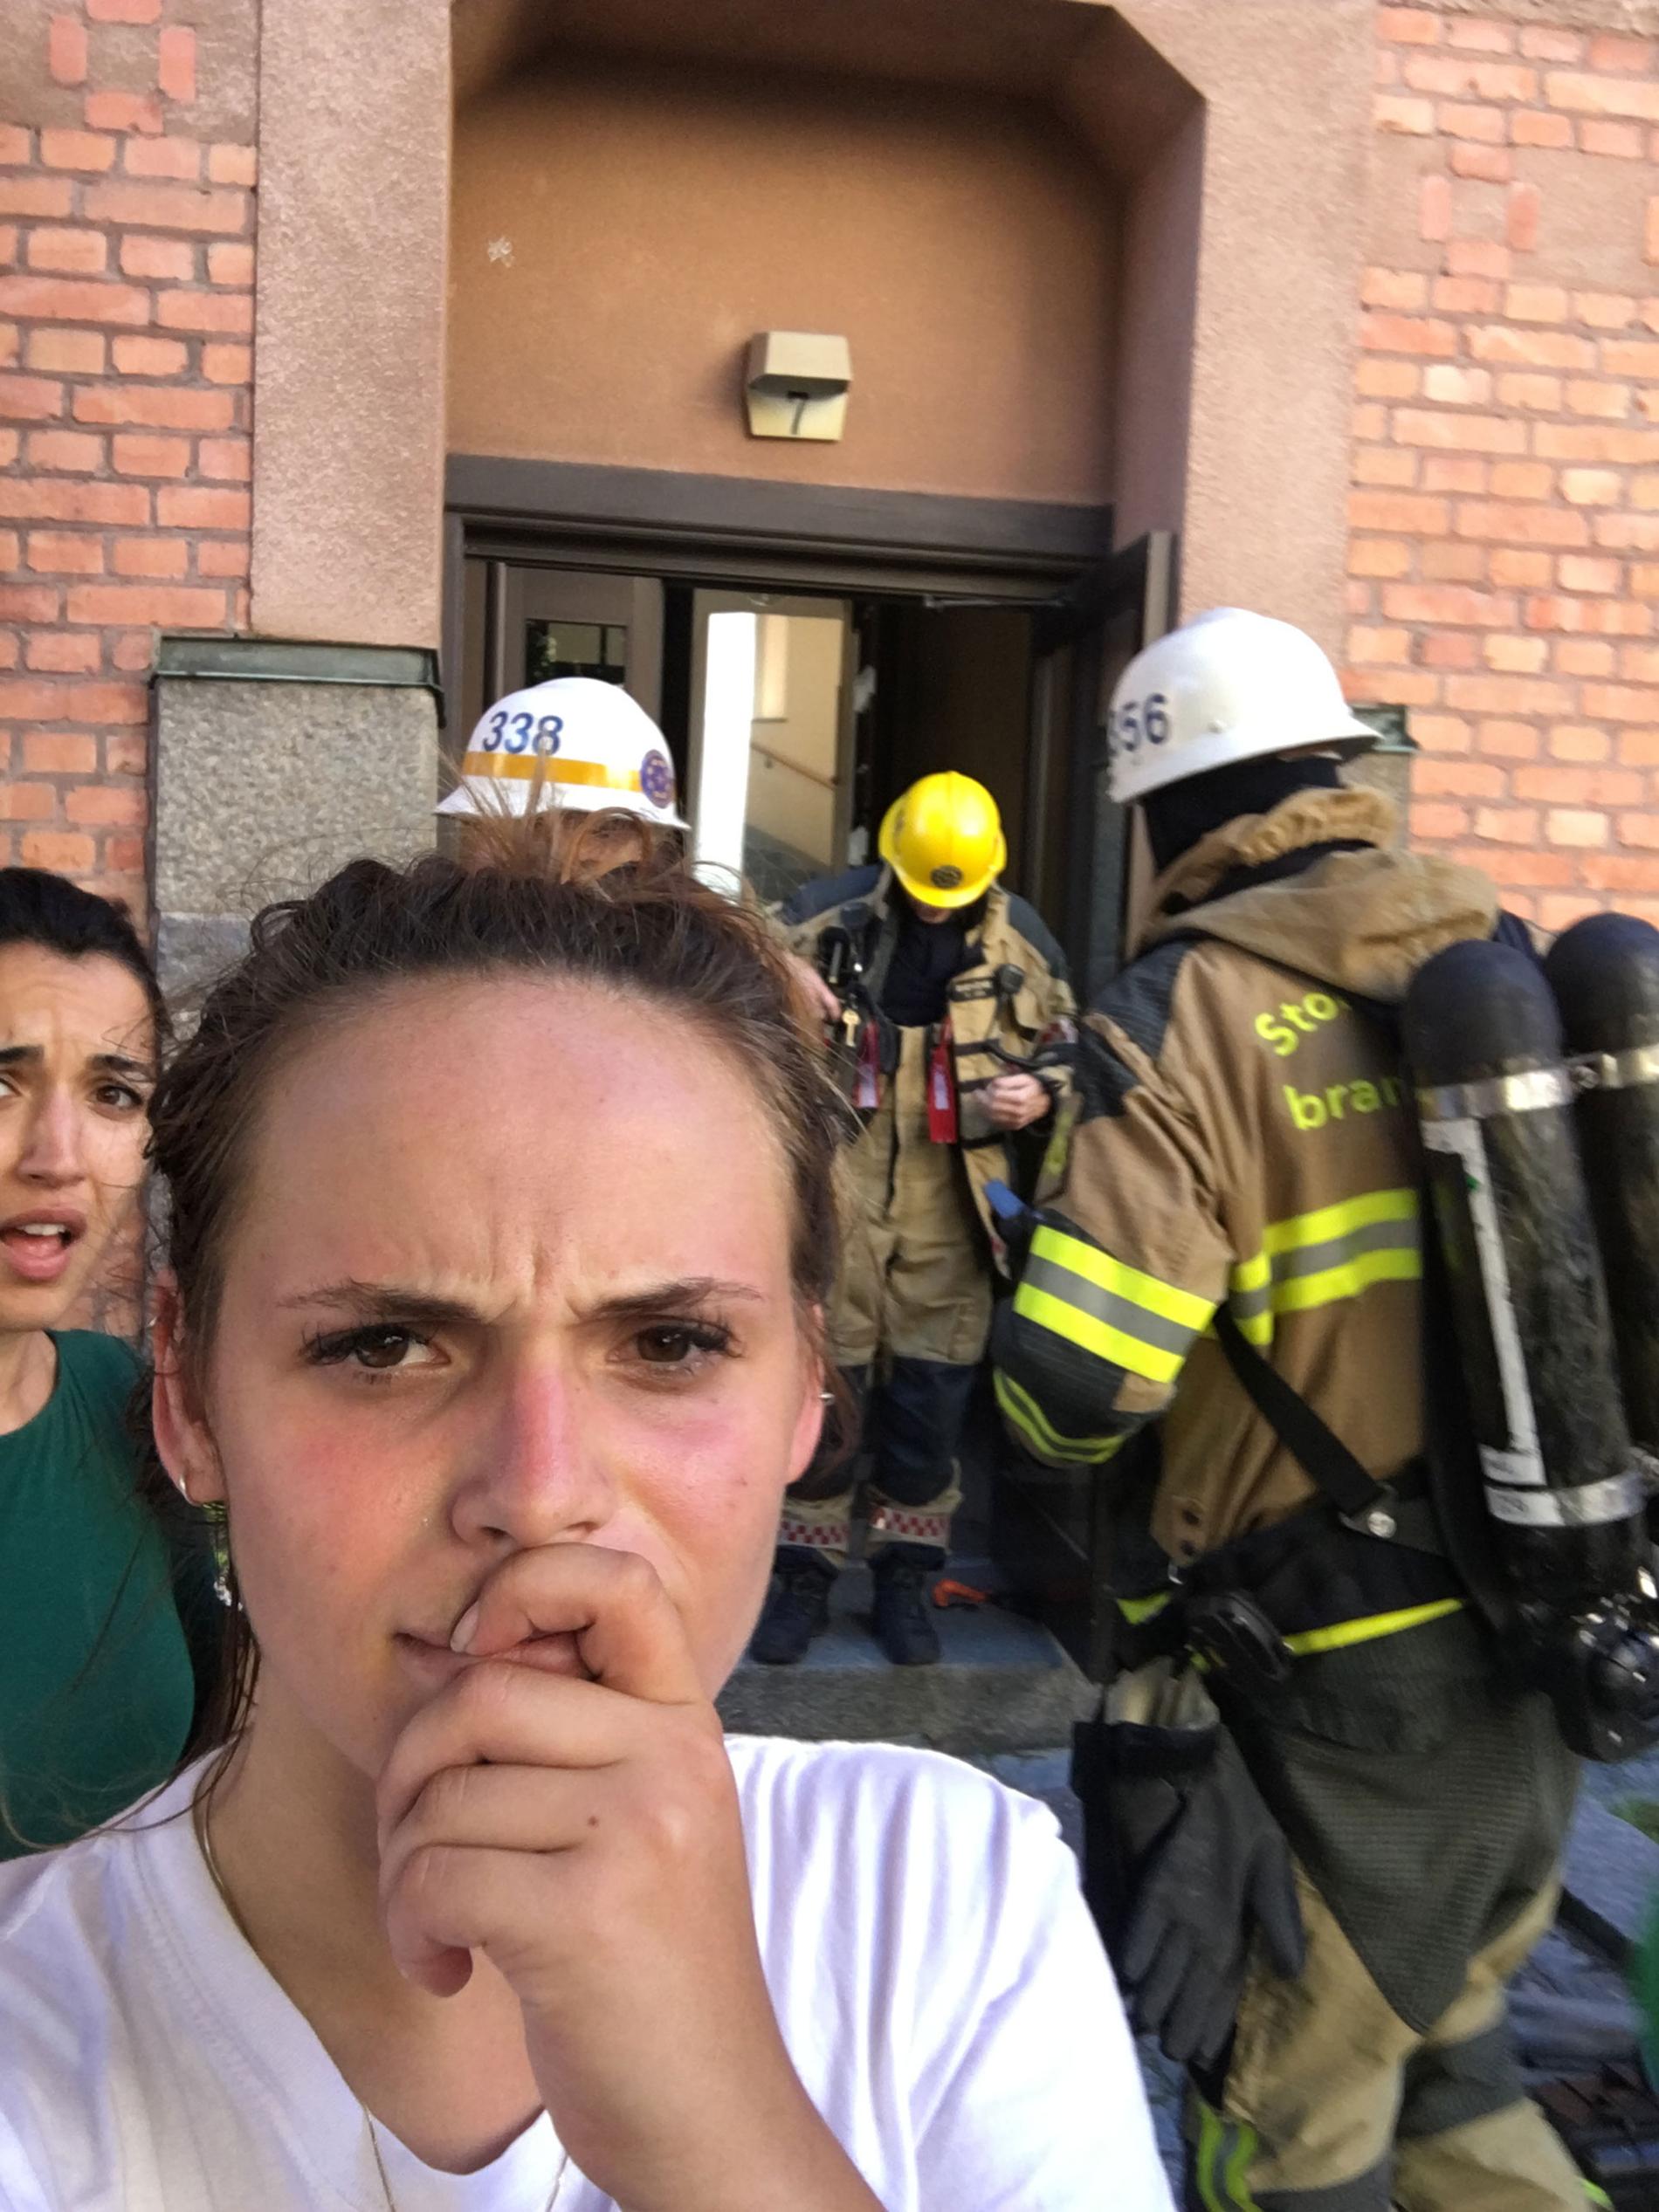 Aina Lesse utanför sin nya bostad, dit brandkåren fick rycka ut direkt.